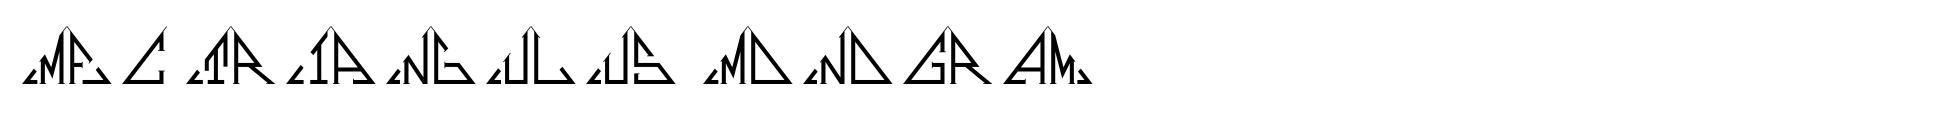 MFC Triangulus Monogram